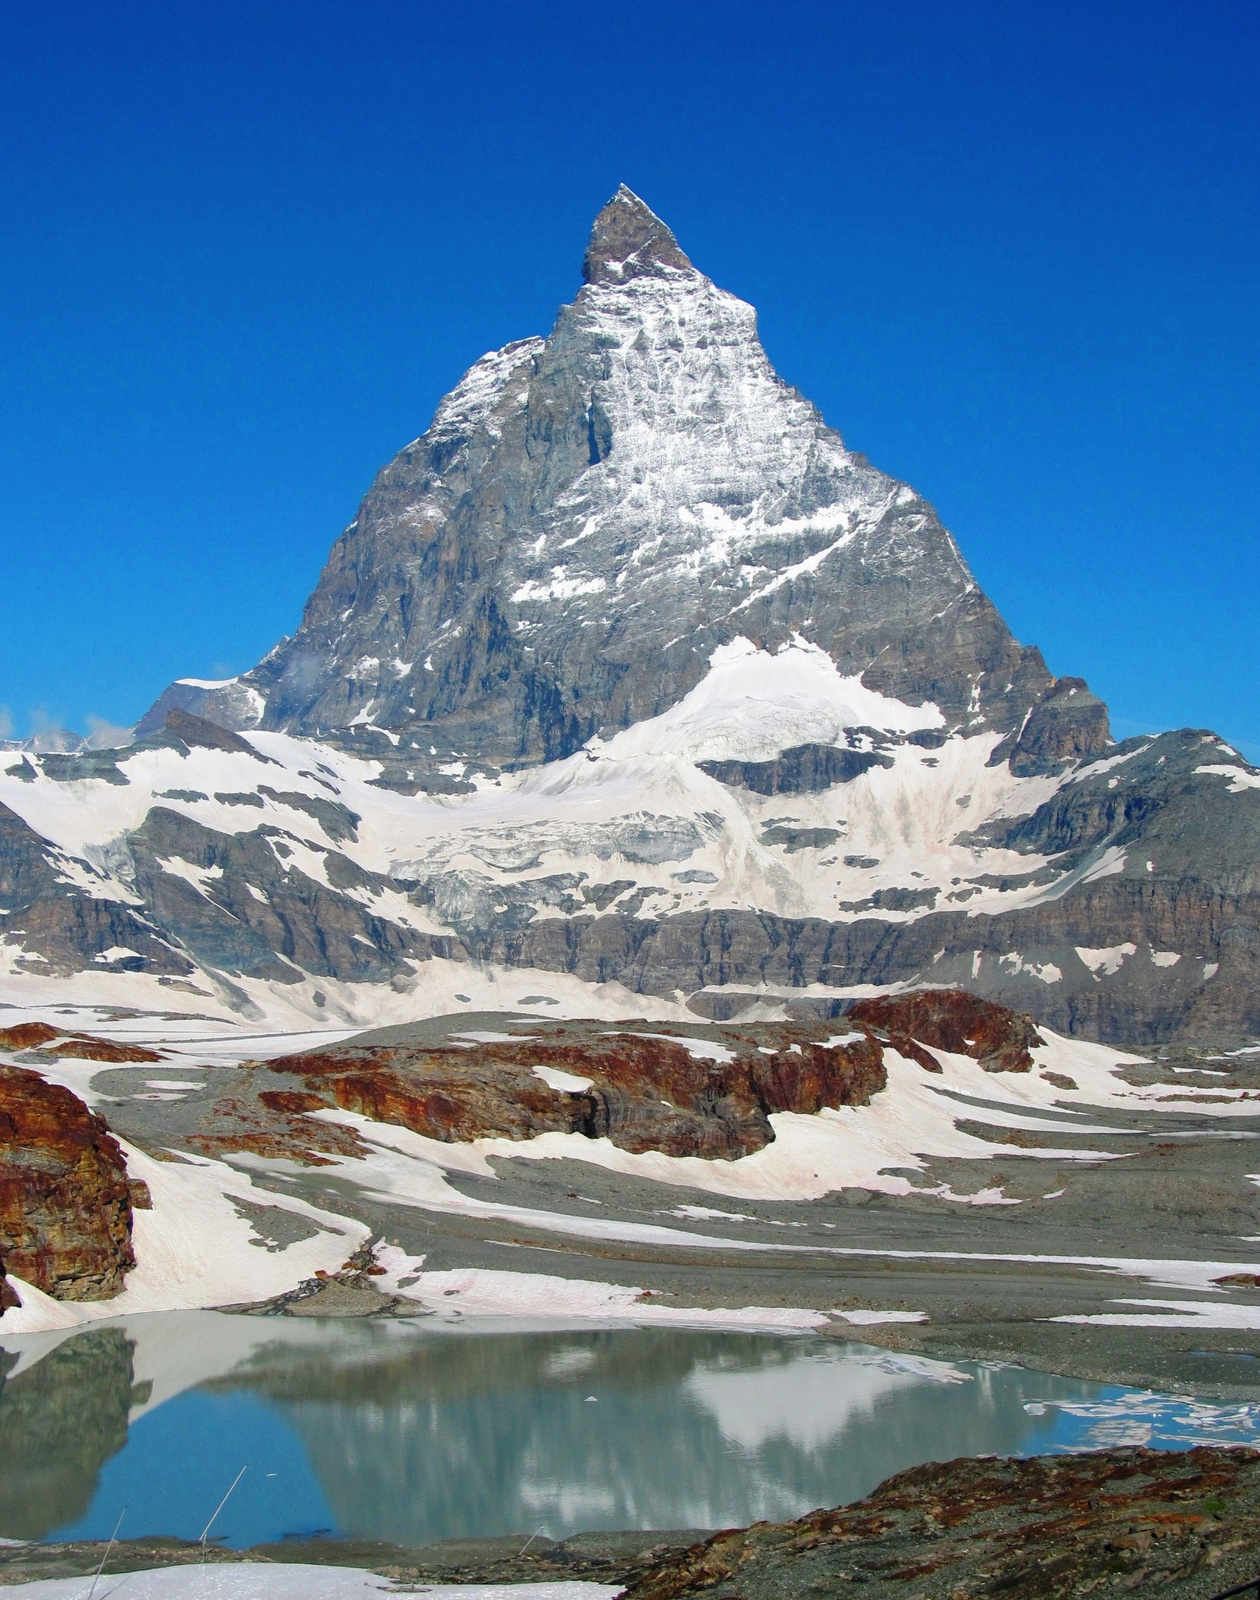 Matterhorn, 4478m